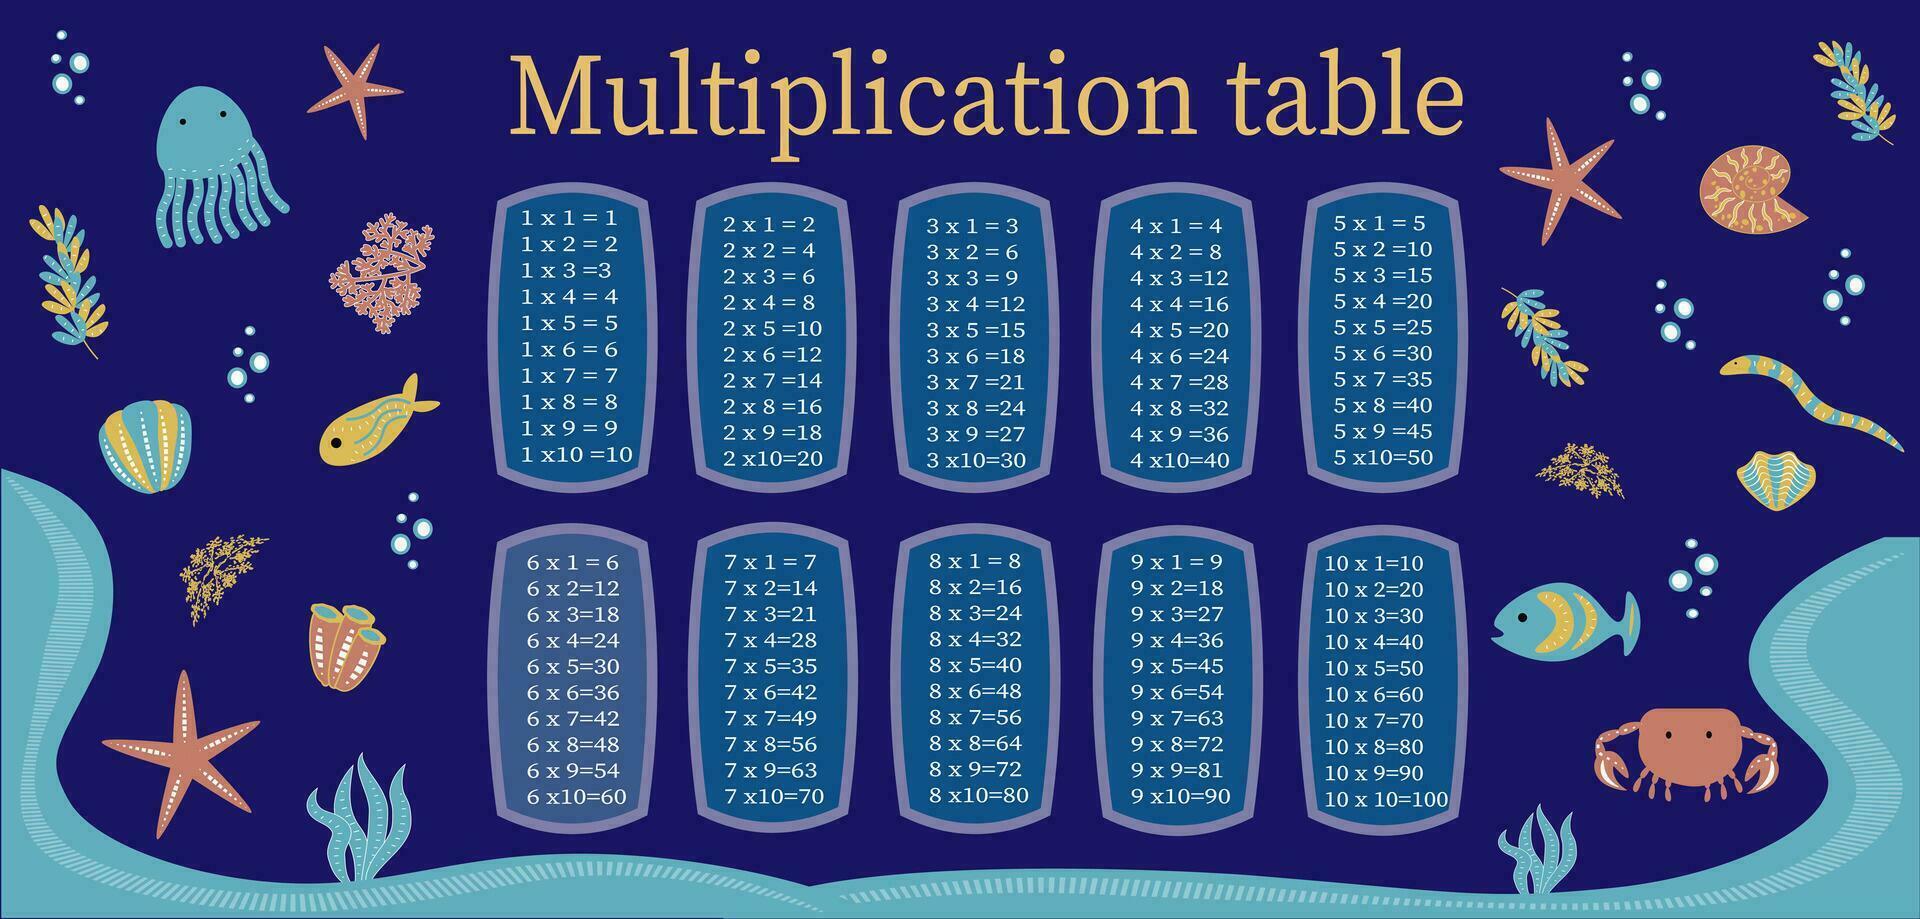 multiplicación mesa desde 1 a 10 vistoso dibujos animados multiplicación mesa vector para educación enseñando matemáticas. eps10